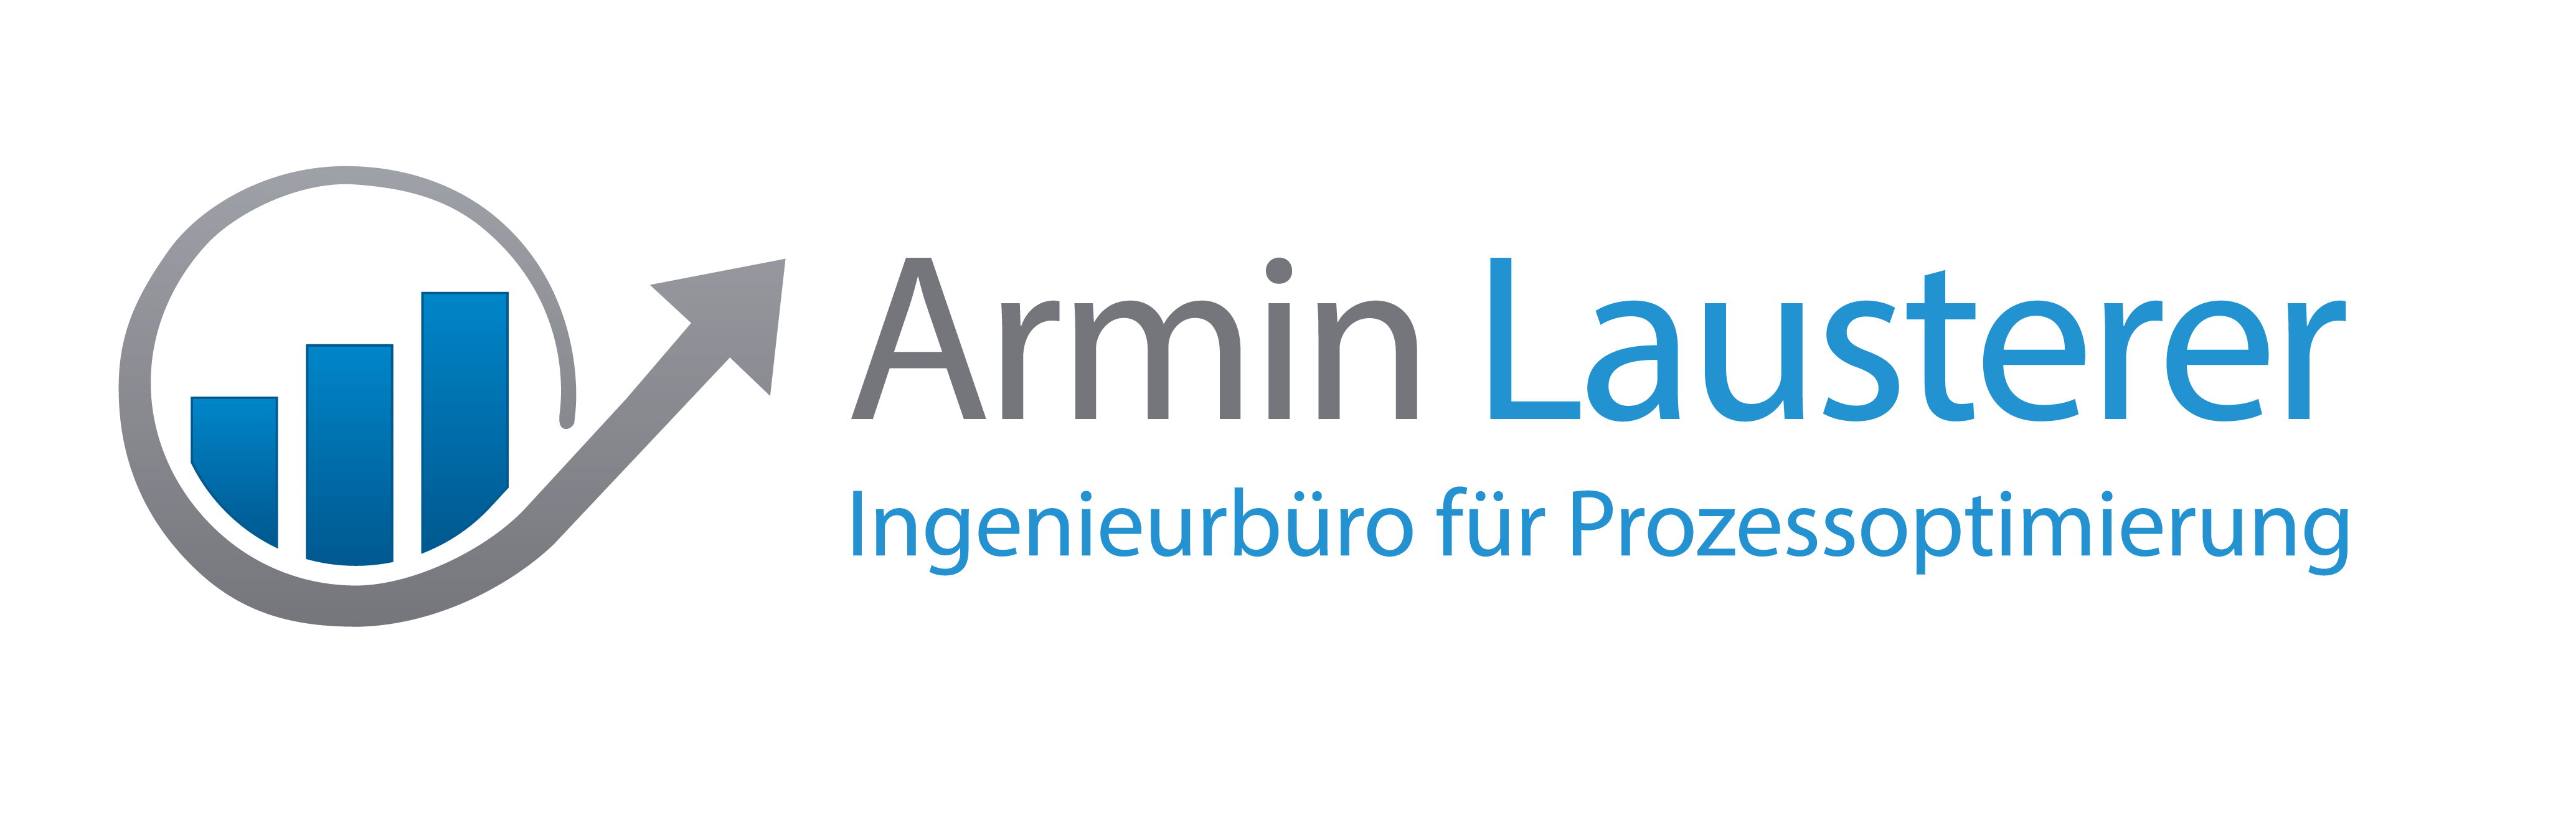 Armin Lausterer - Ingenieurbüro für Prozessoptimierung